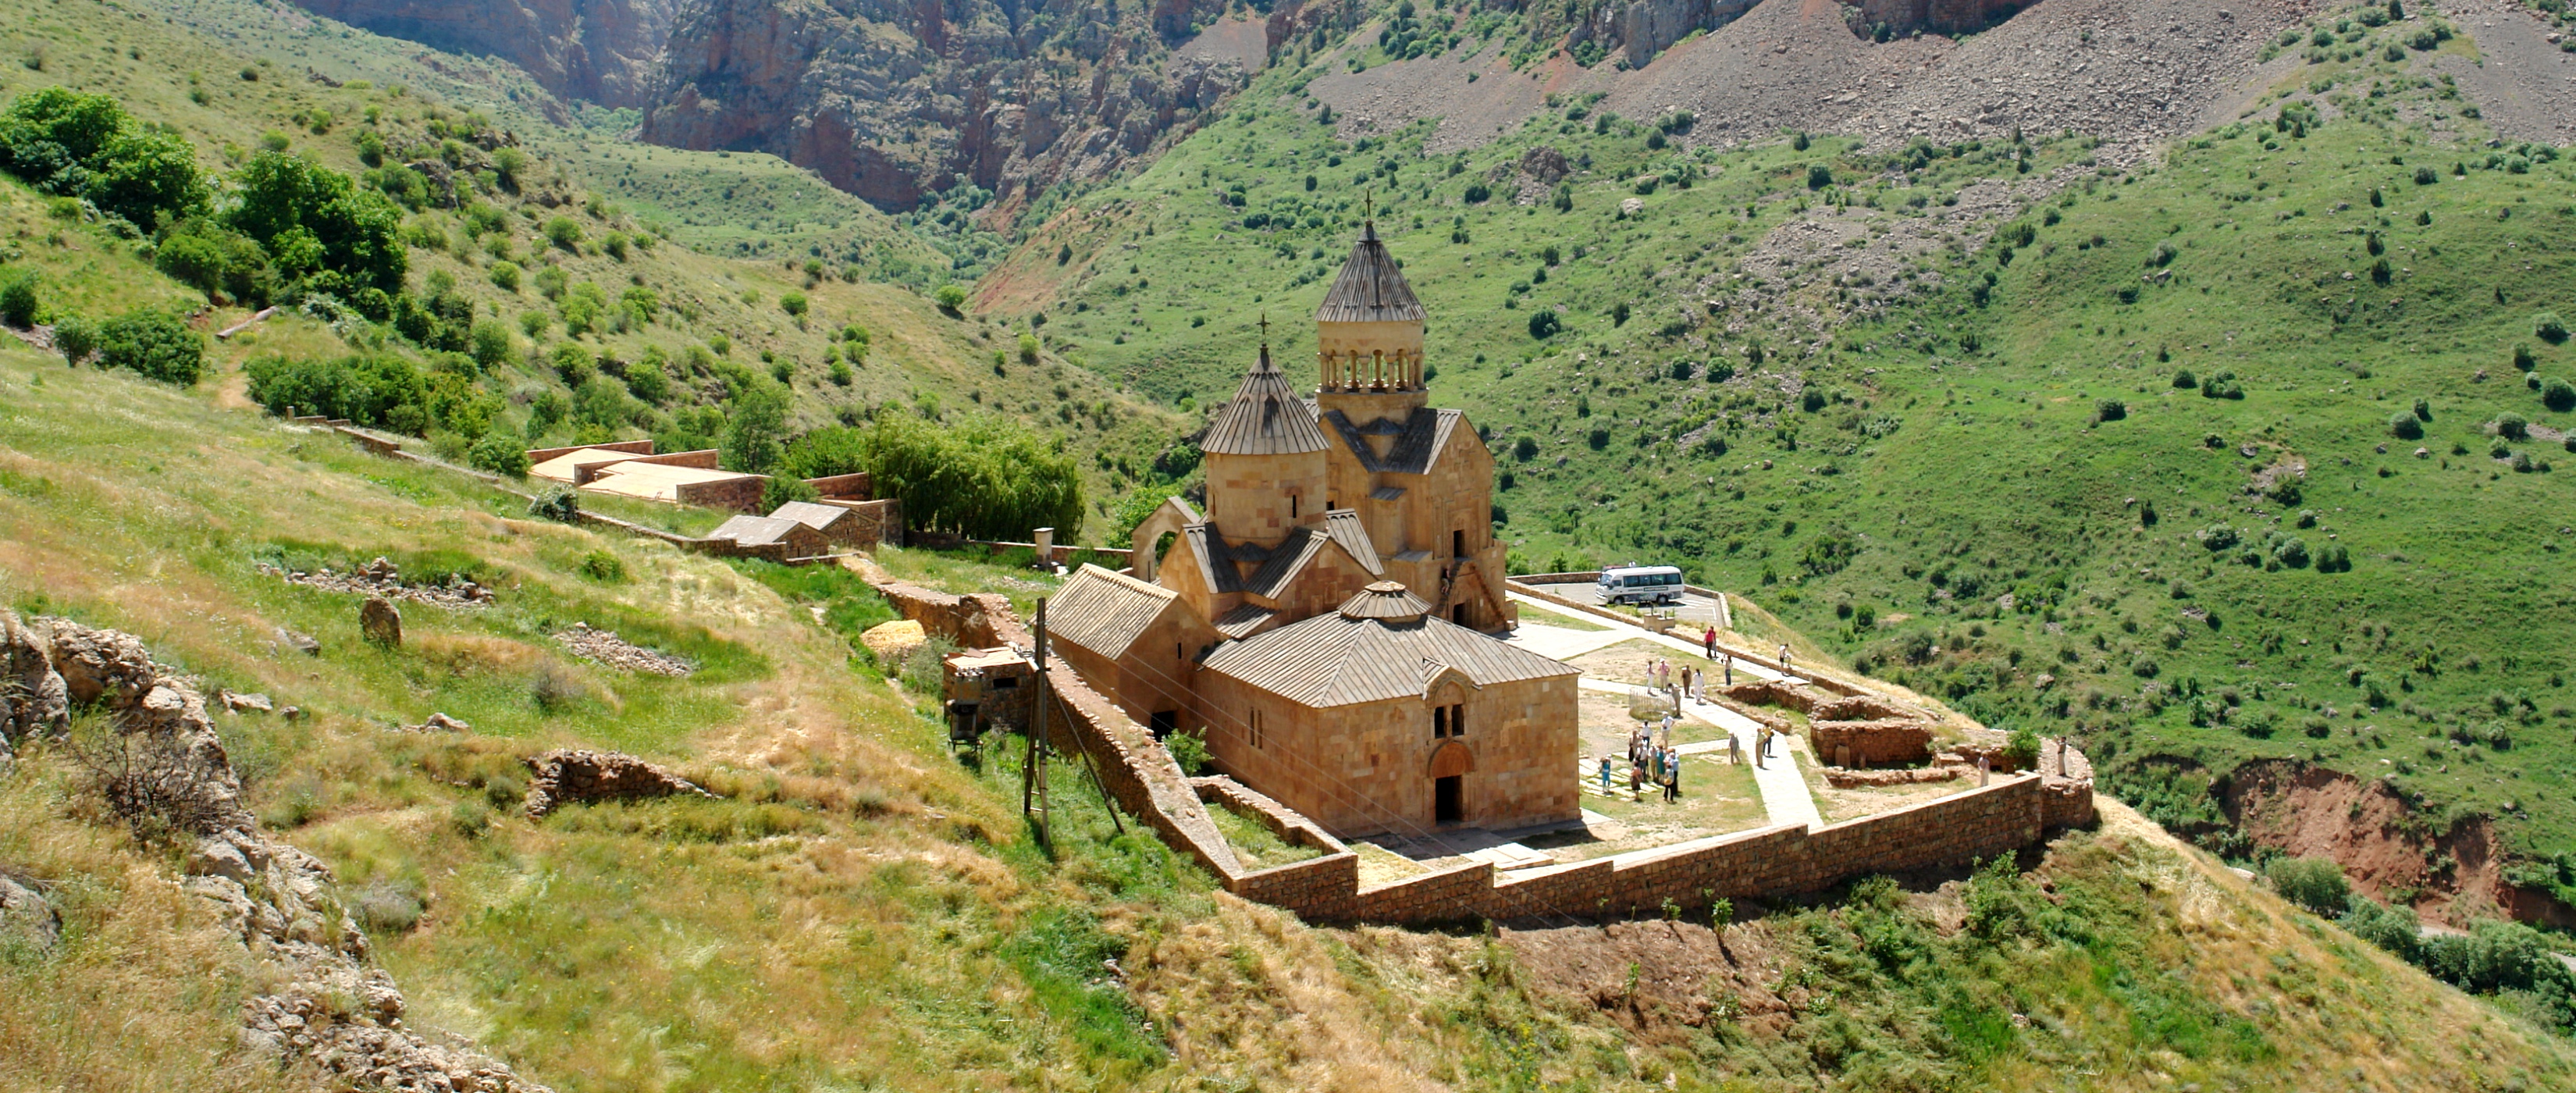 Lupe Reisen Armenien - Lupe Reisen